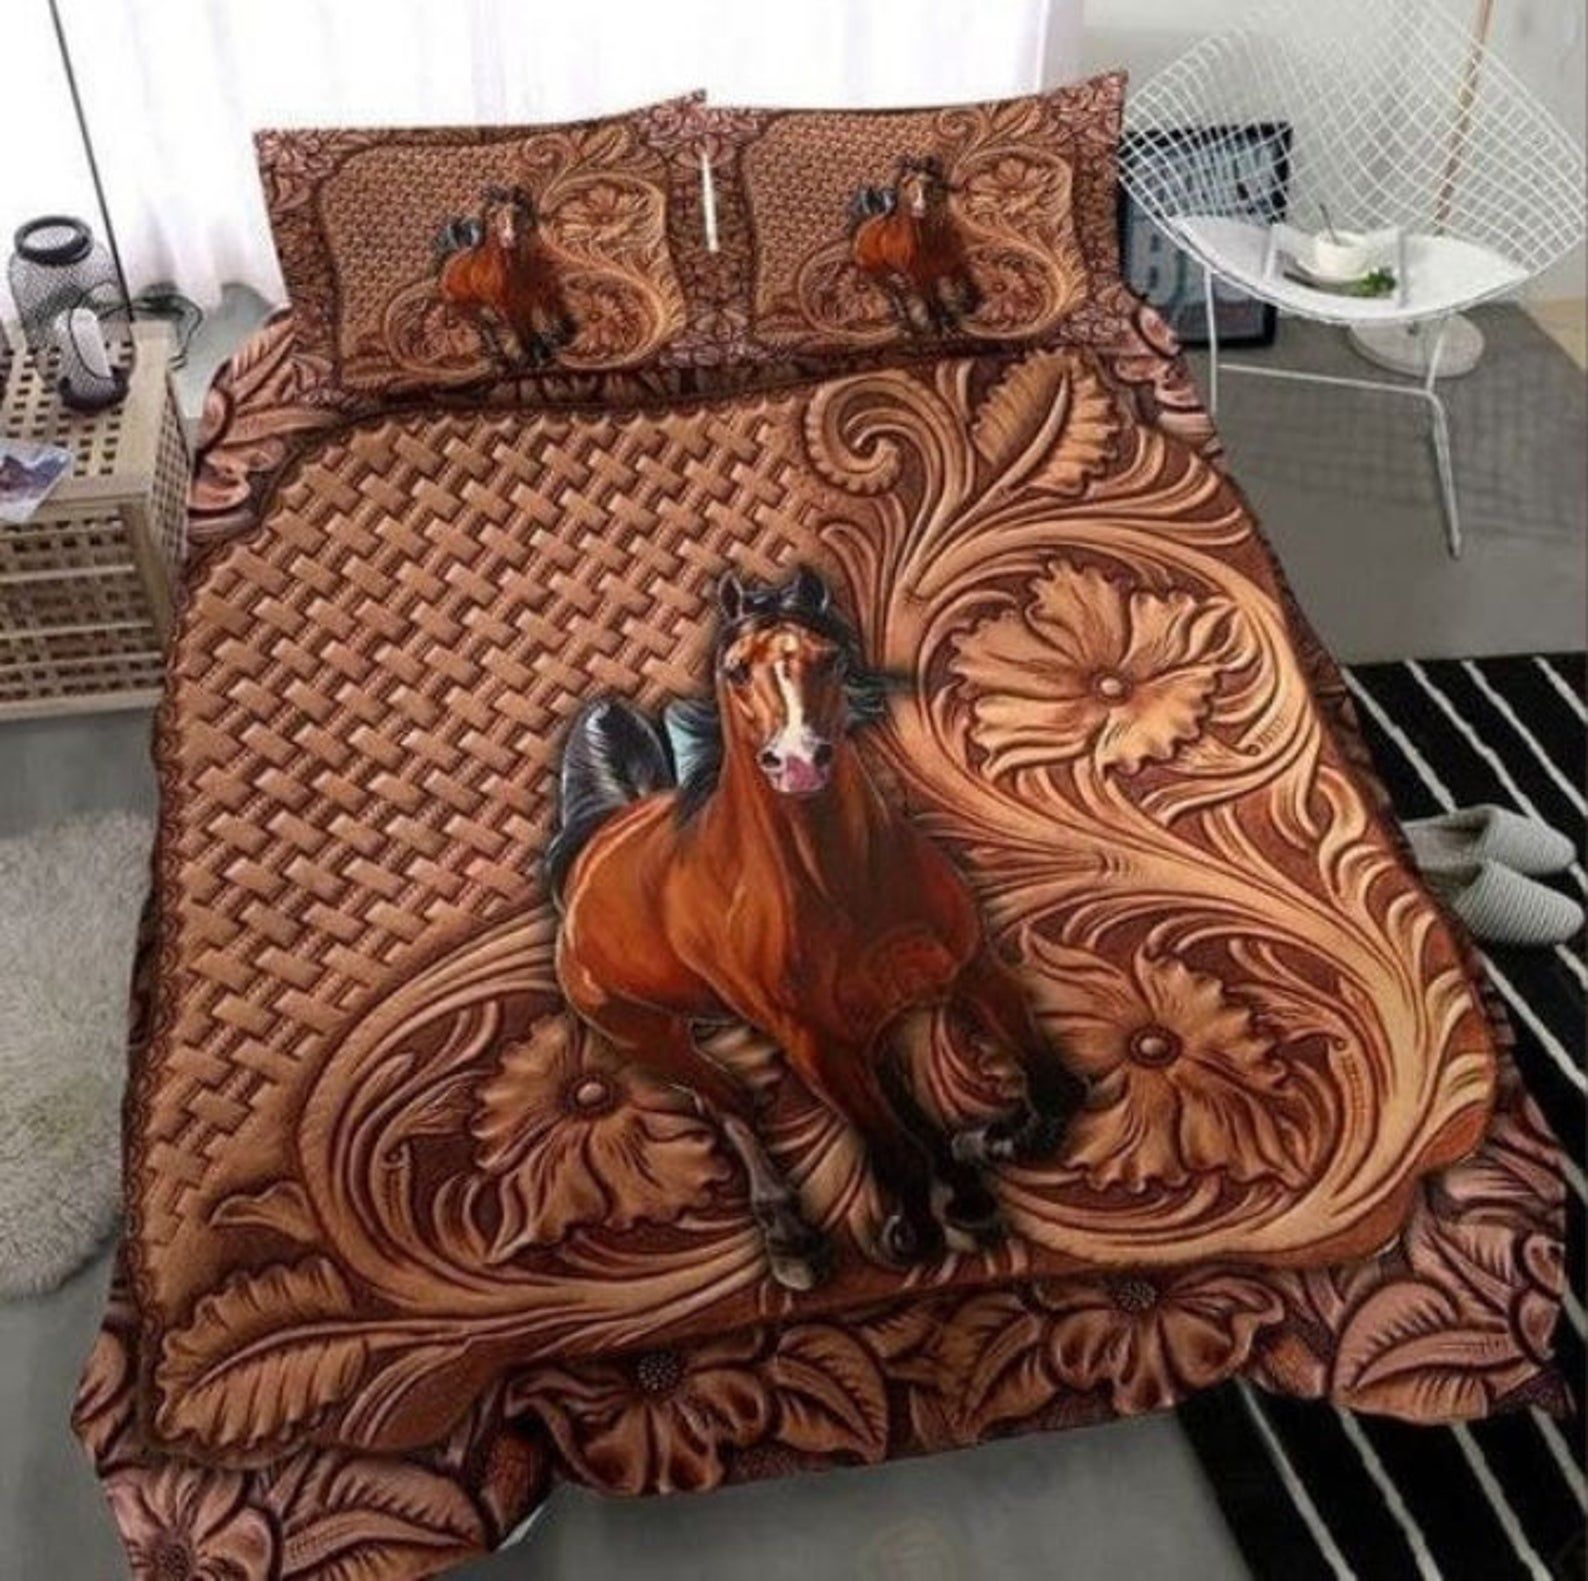 Horse Bedding Set Bed Sheets Spread Comforter Duvet Cover Bedding Sets